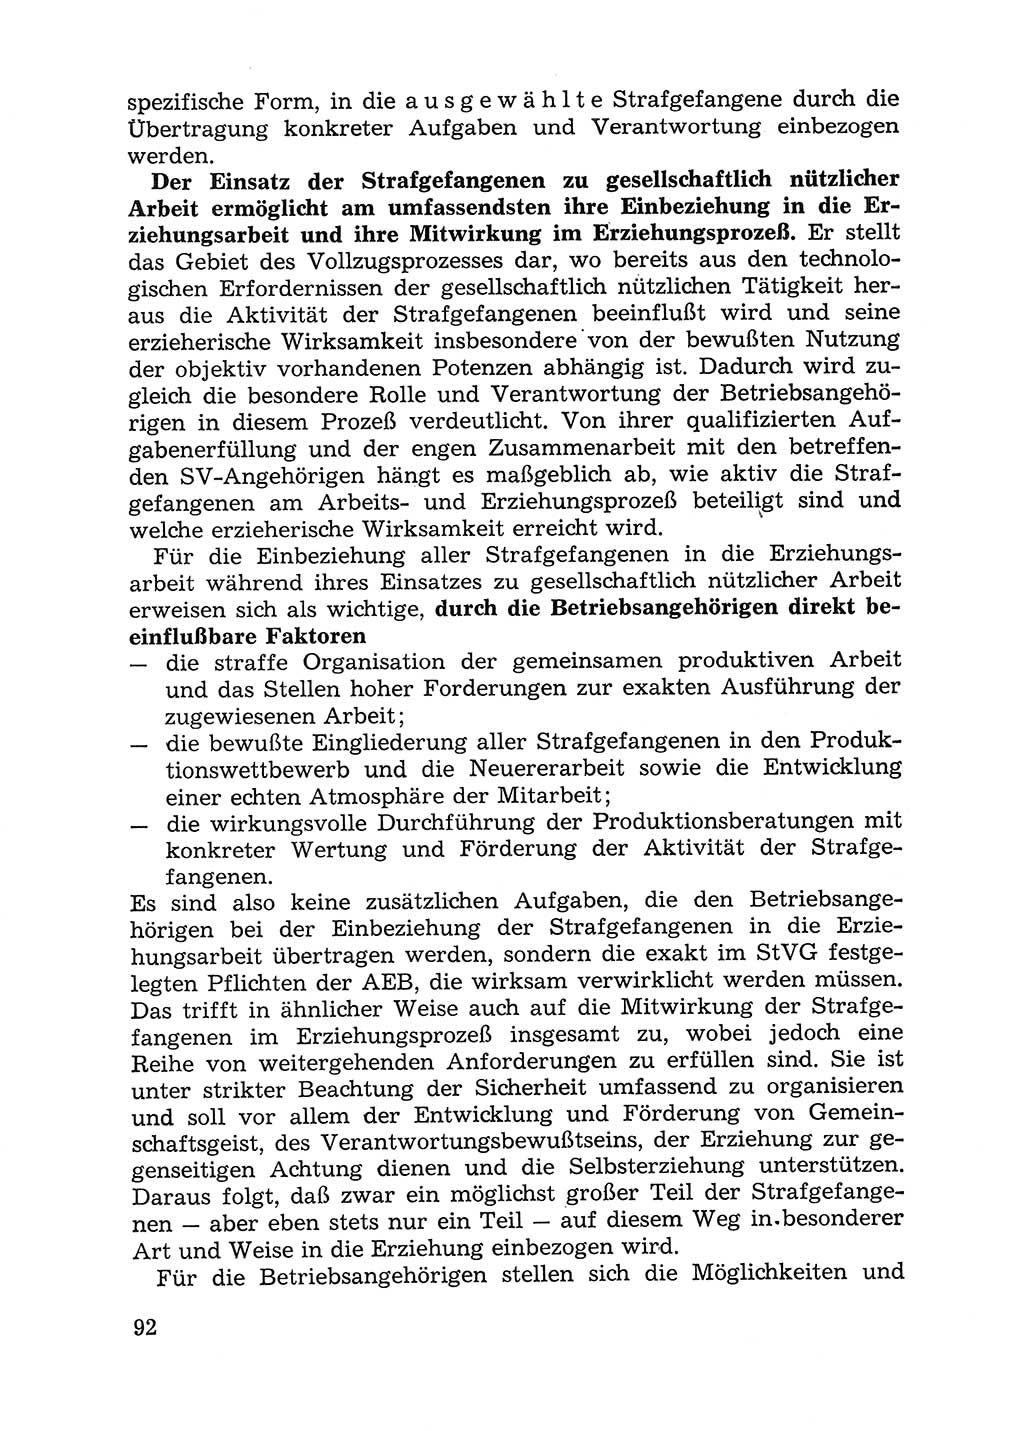 Handbuch für Betriebsangehörige, Abteilung Strafvollzug (SV) [Ministerium des Innern (MdI) Deutsche Demokratische Republik (DDR)] 1981, Seite 92 (Hb. BA Abt. SV MdI DDR 1981, S. 92)